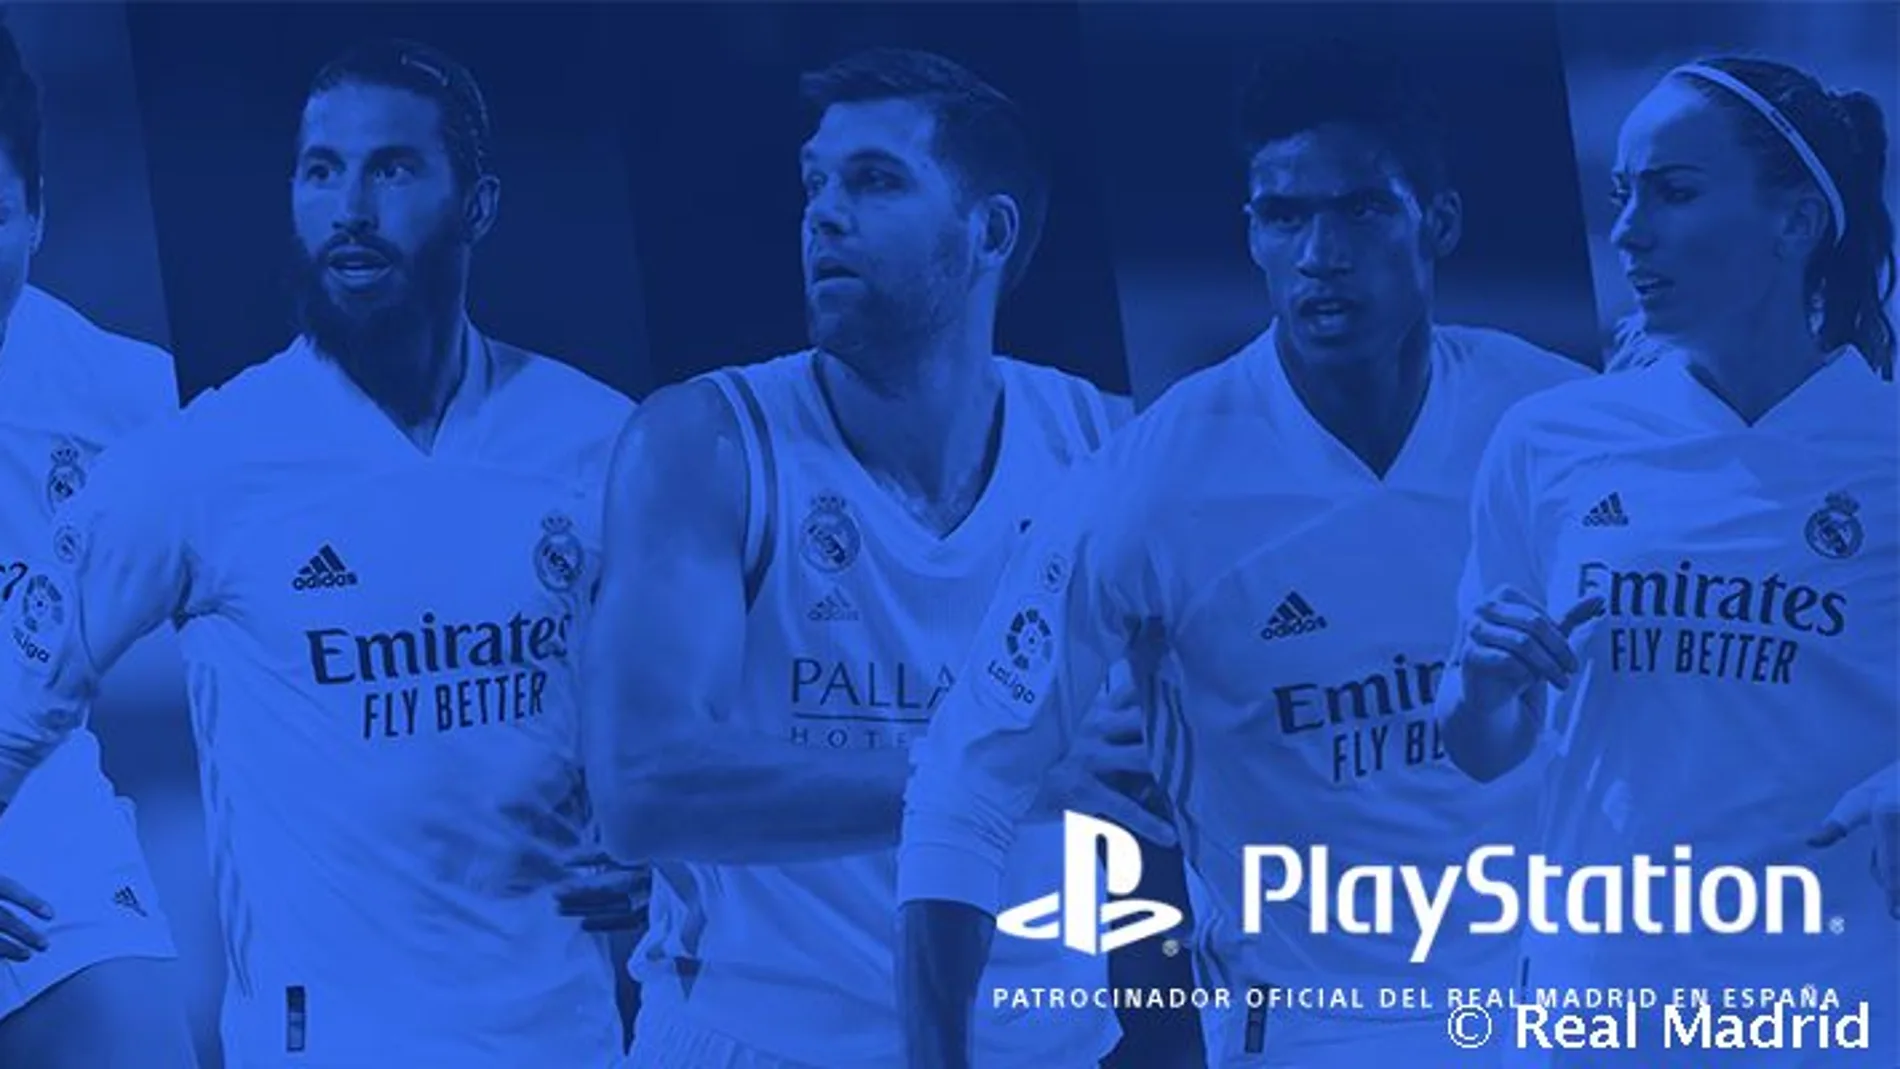 Acuerdo entre Sony y el Real Madrid